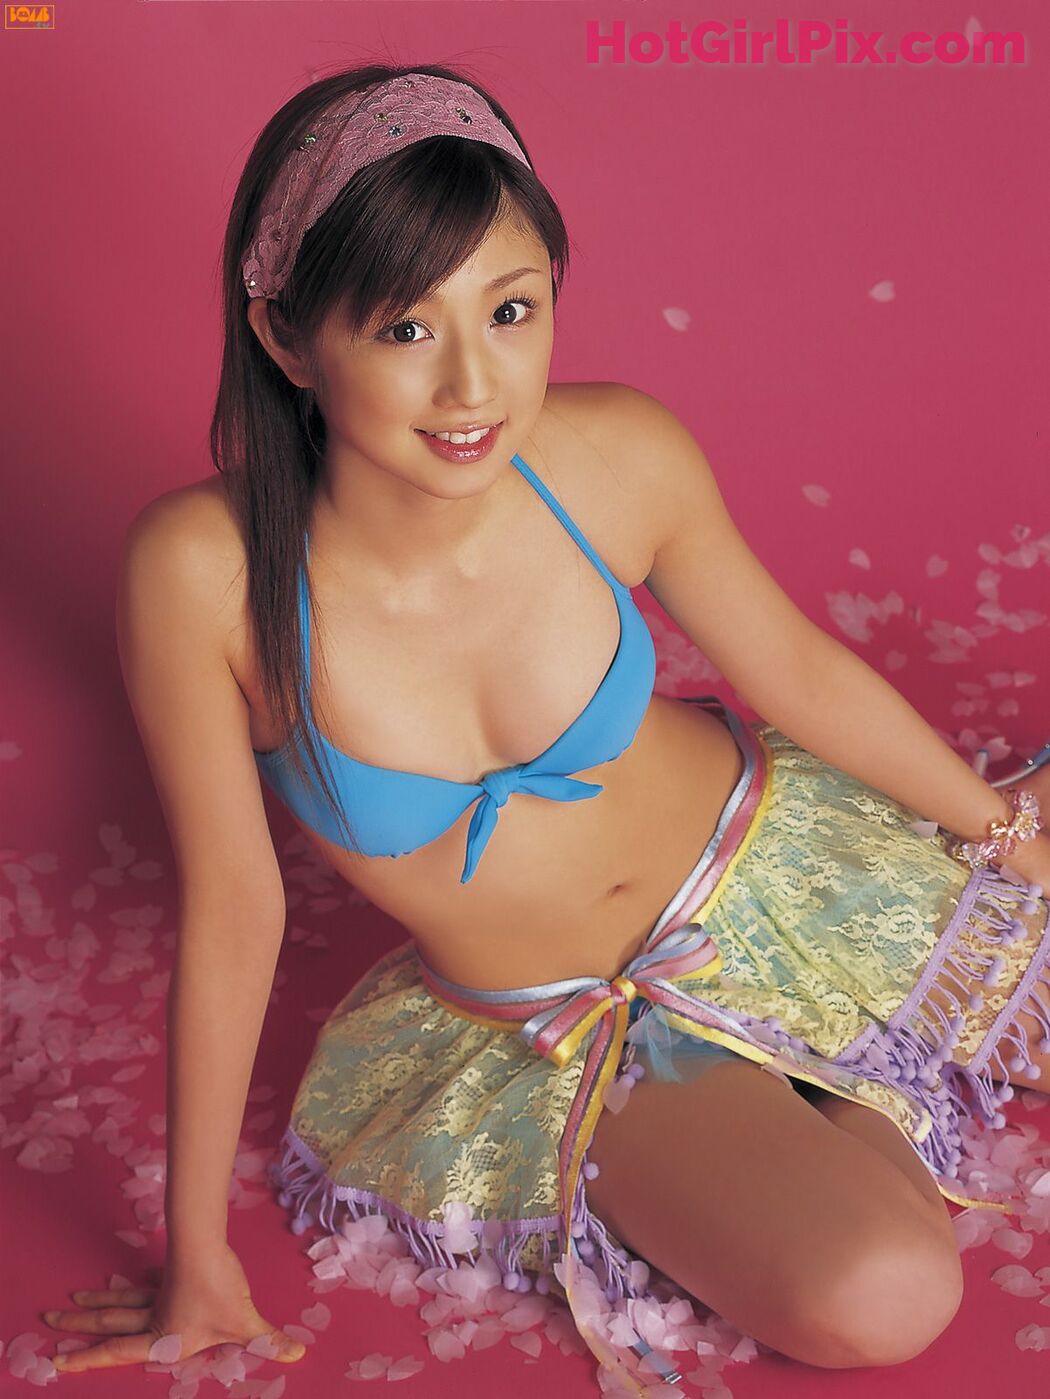 [Bomb.TV] June 2006 Issue - Yuko Ogura Cover Photo